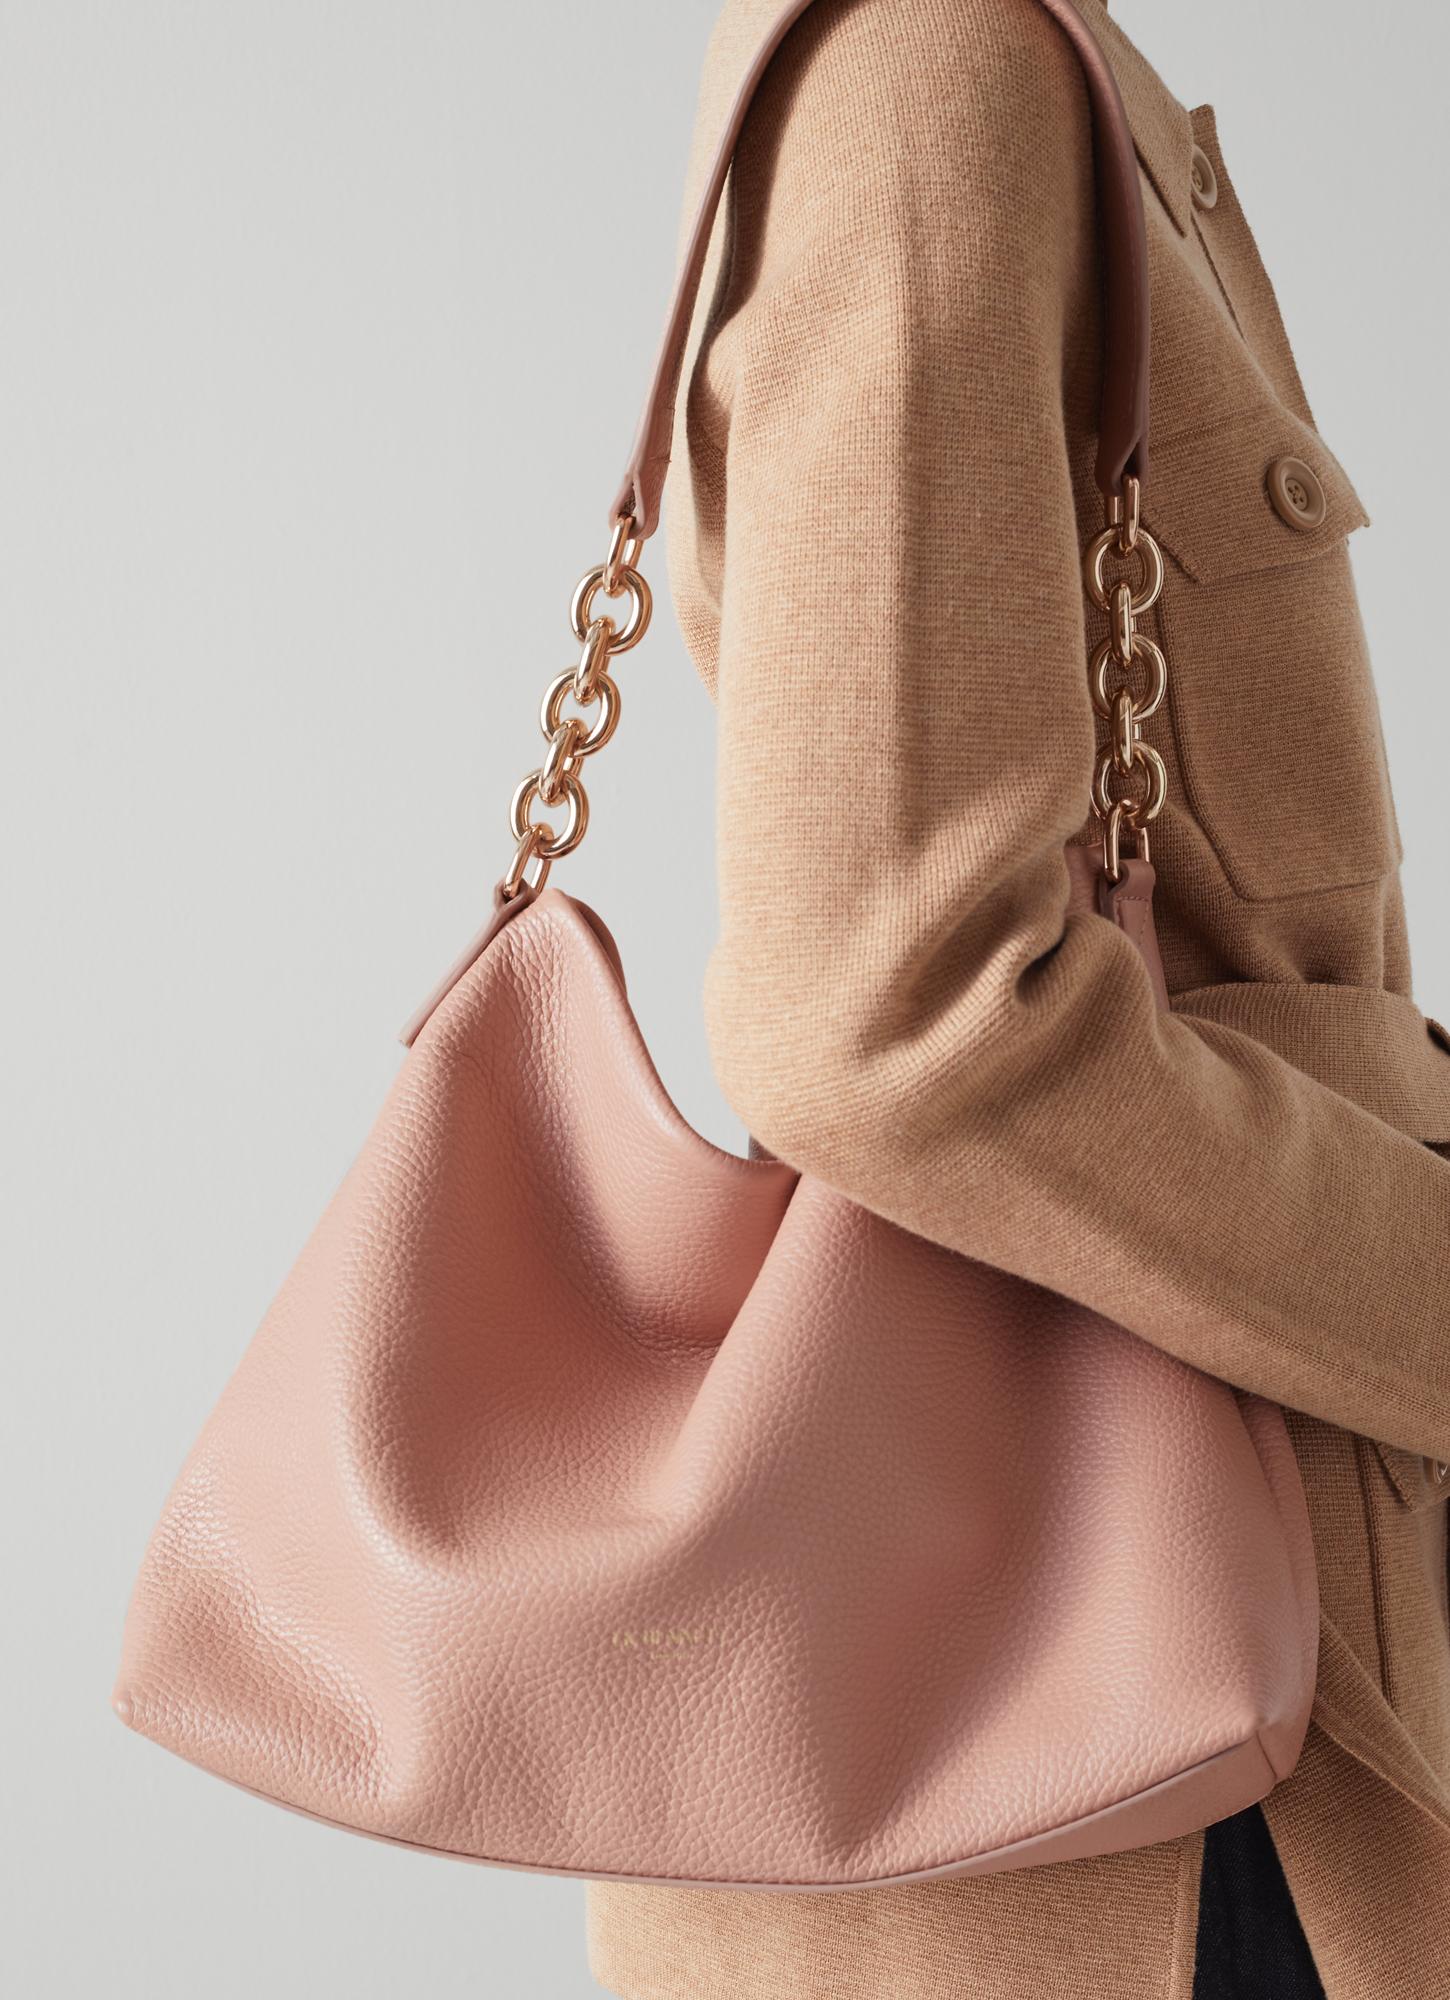 LK Bennett Handbags | ShopStyle